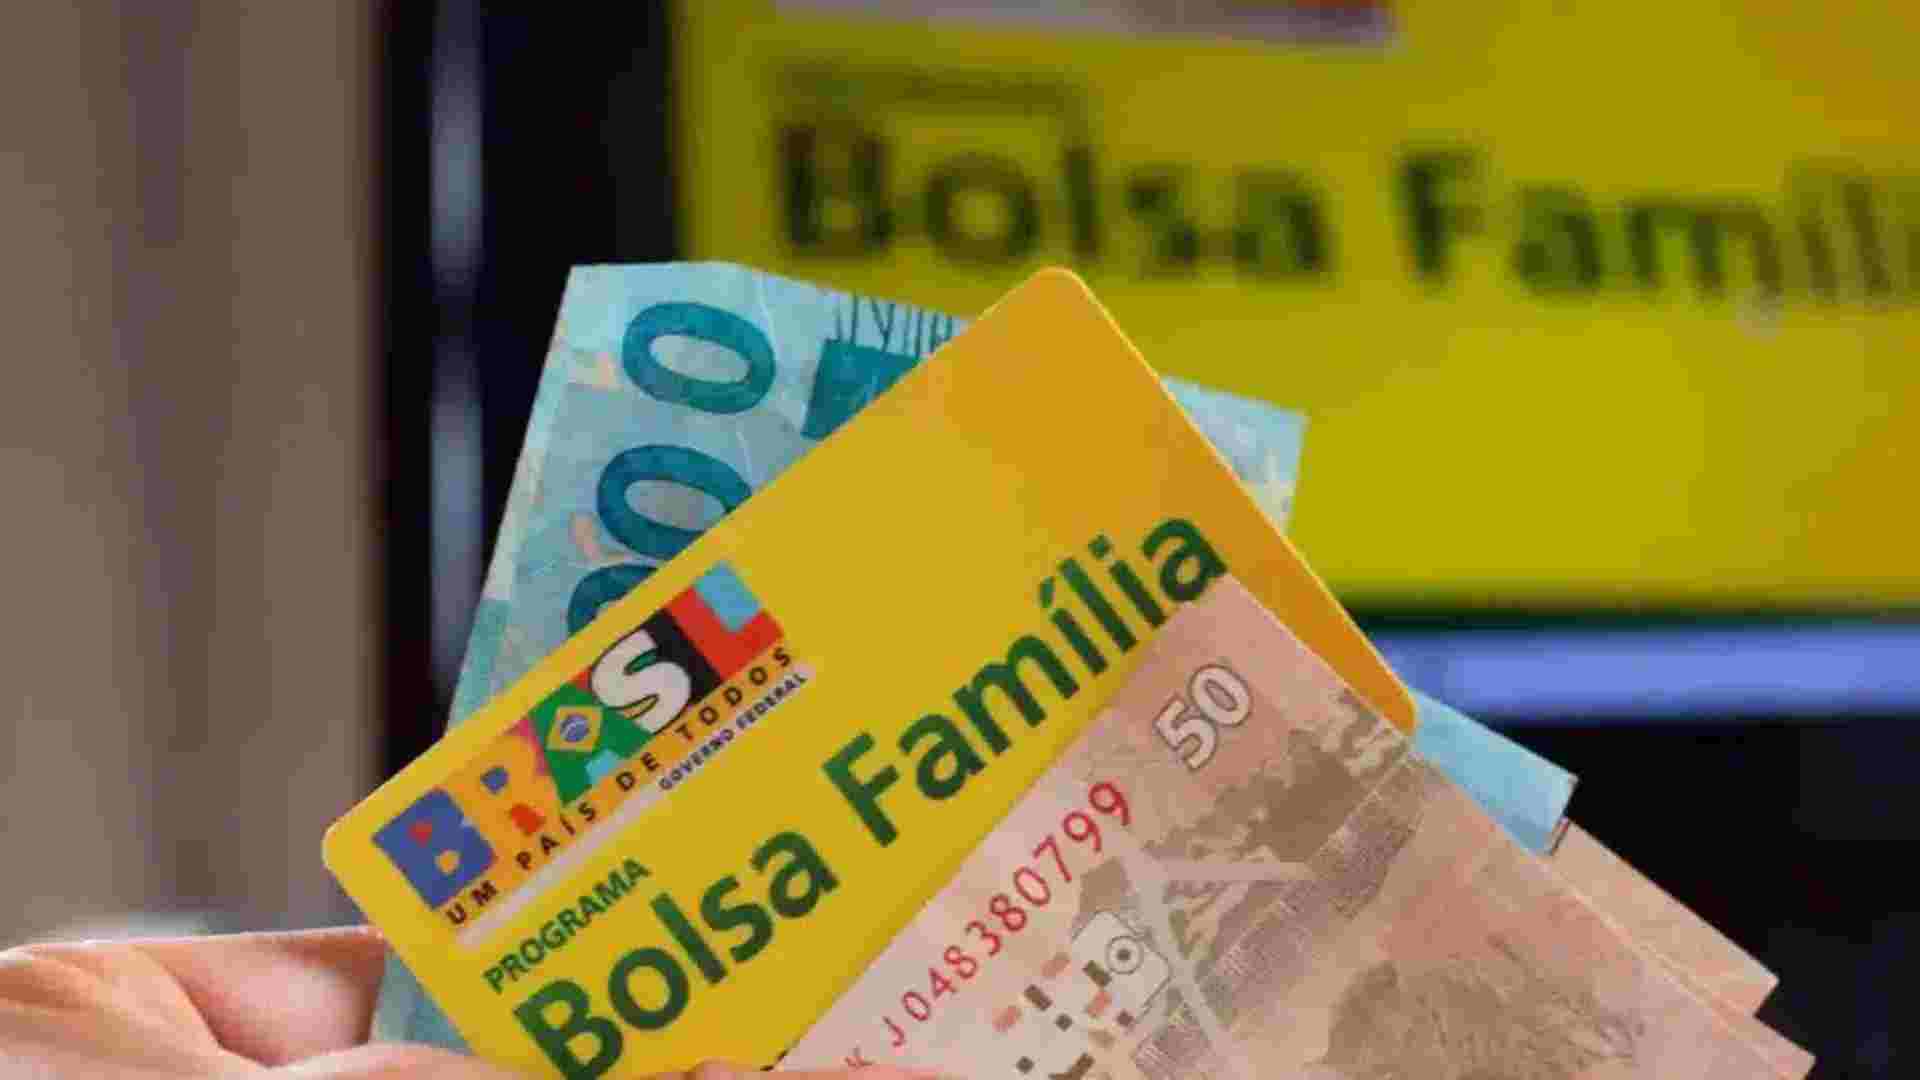 Bolsa Família divulga cronograma de pagamentos para o mês de julho, confira o calendário